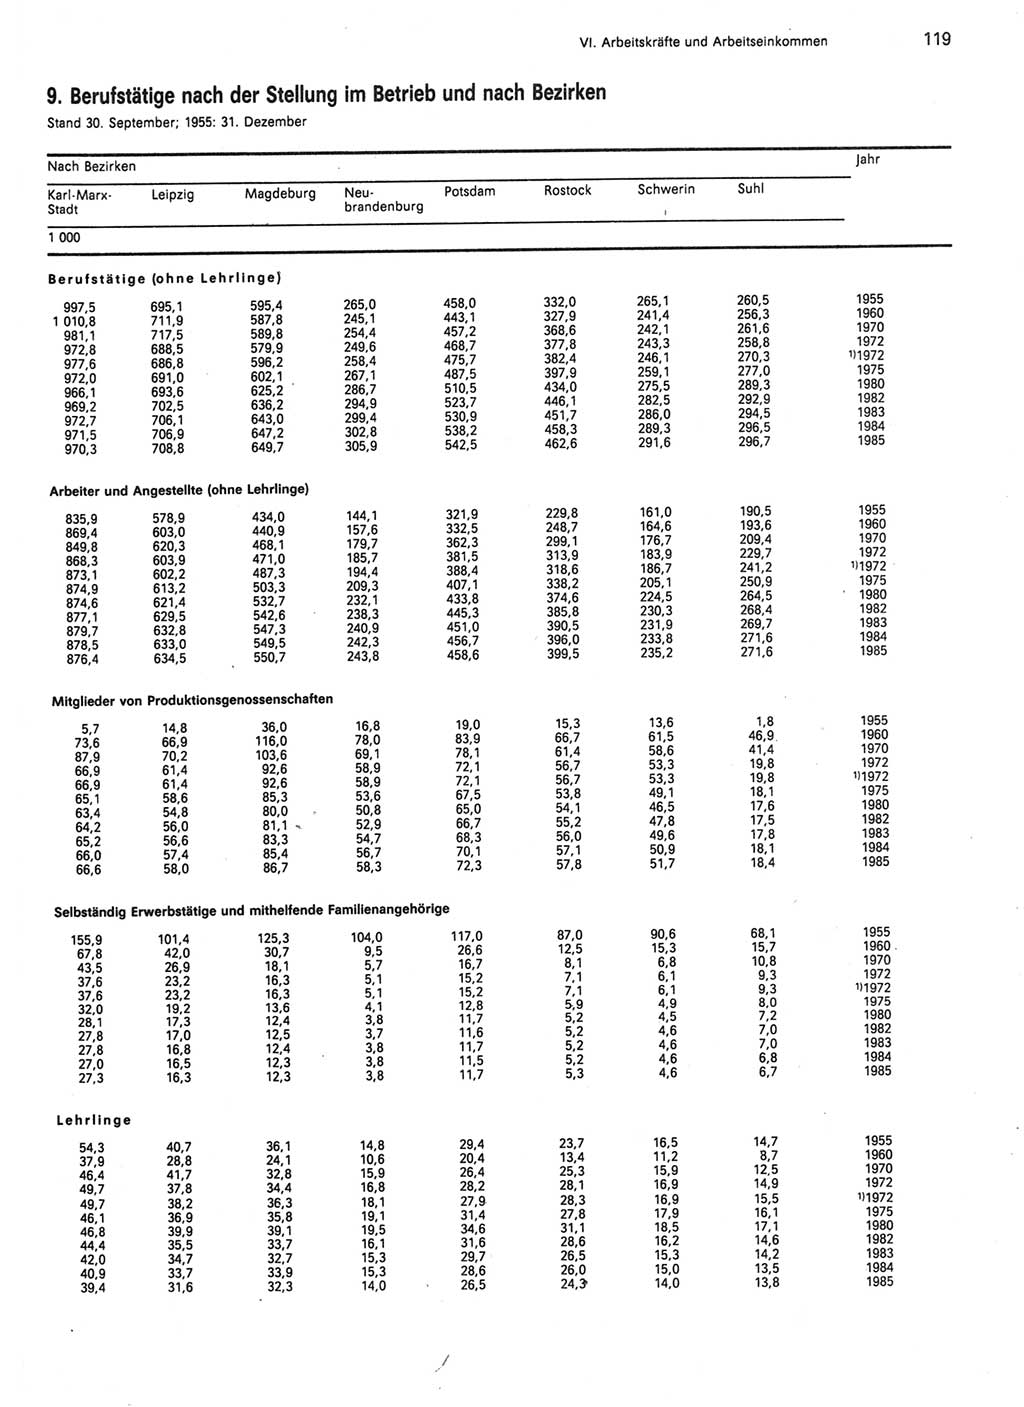 Statistisches Jahrbuch der Deutschen Demokratischen Republik (DDR) 1986, Seite 119 (Stat. Jb. DDR 1986, S. 119)